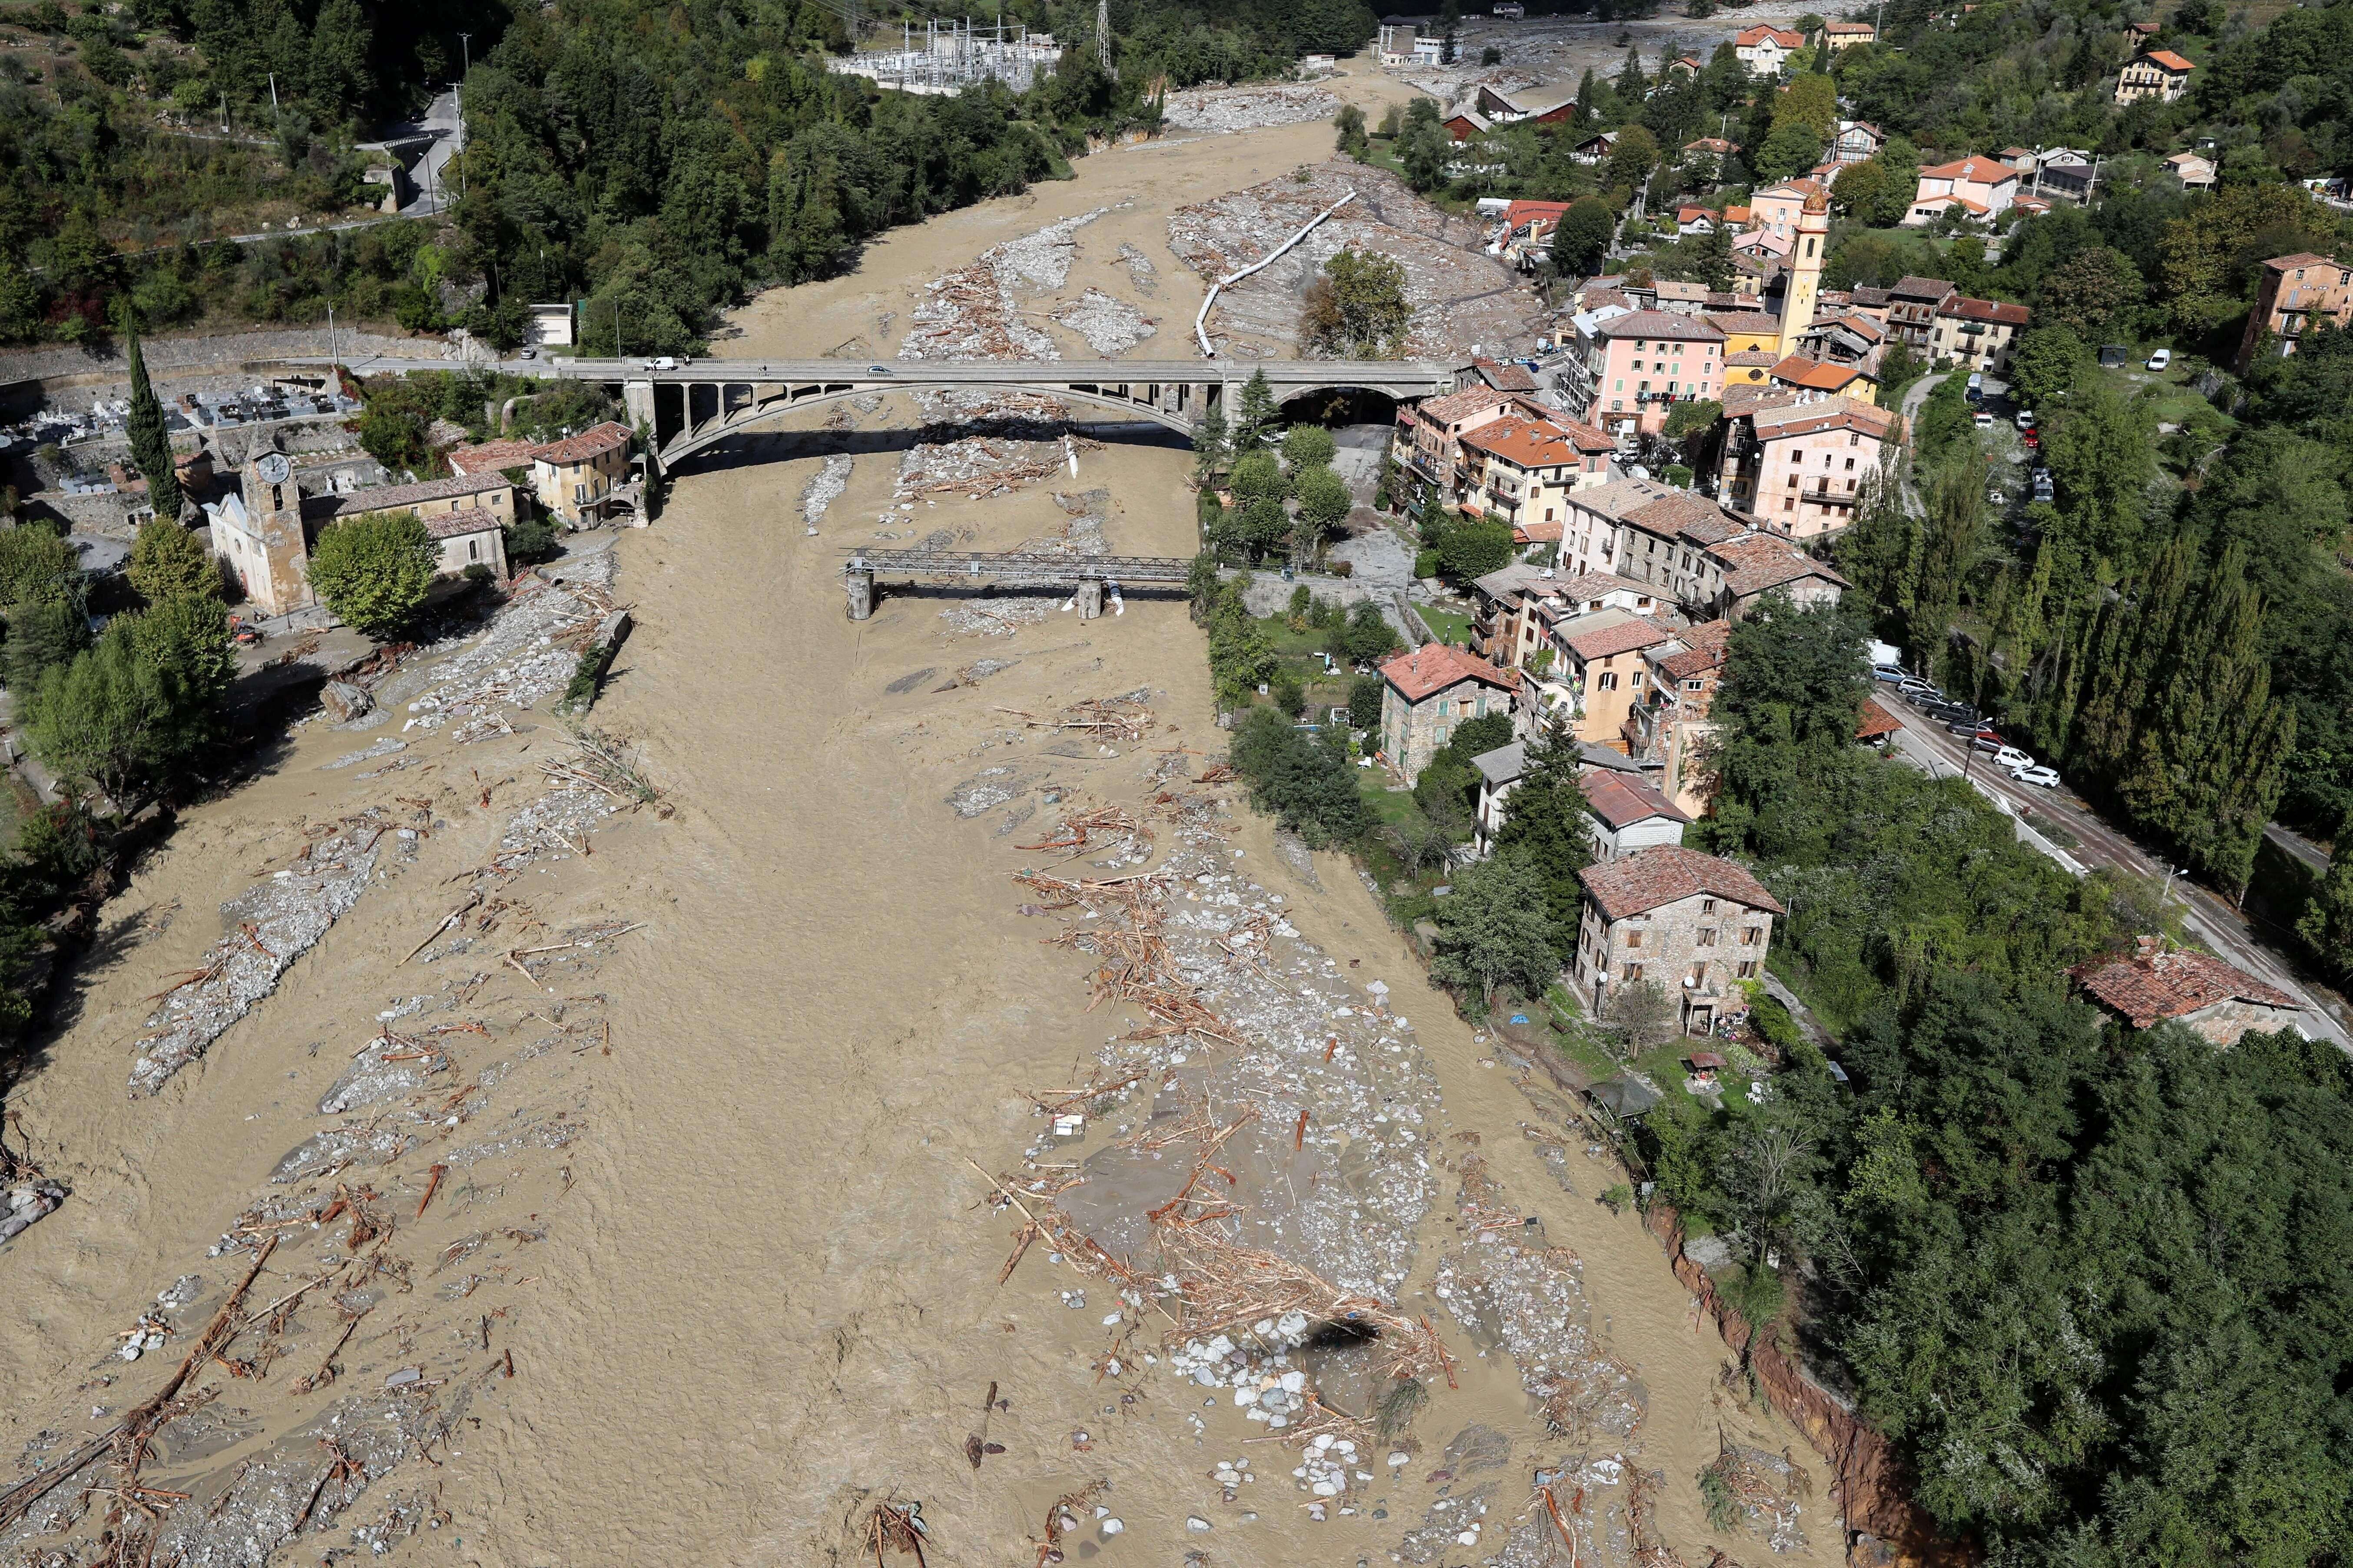 Vue aérienne de la commune de Roquebilliere, ravagée par des inondations causées par les intempéries dans les Alpes-Maritimes.